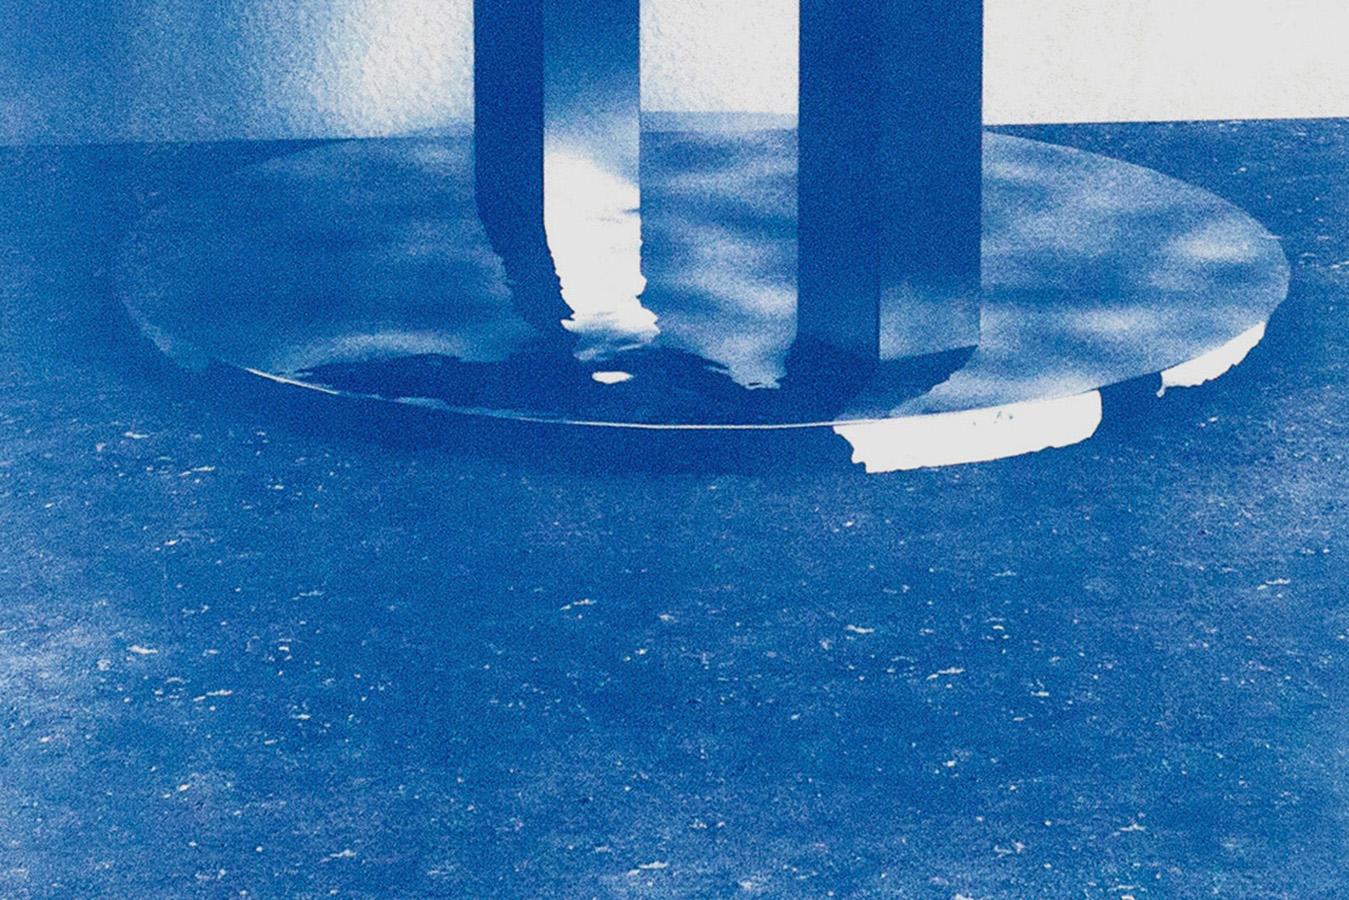 cyanotype abstract